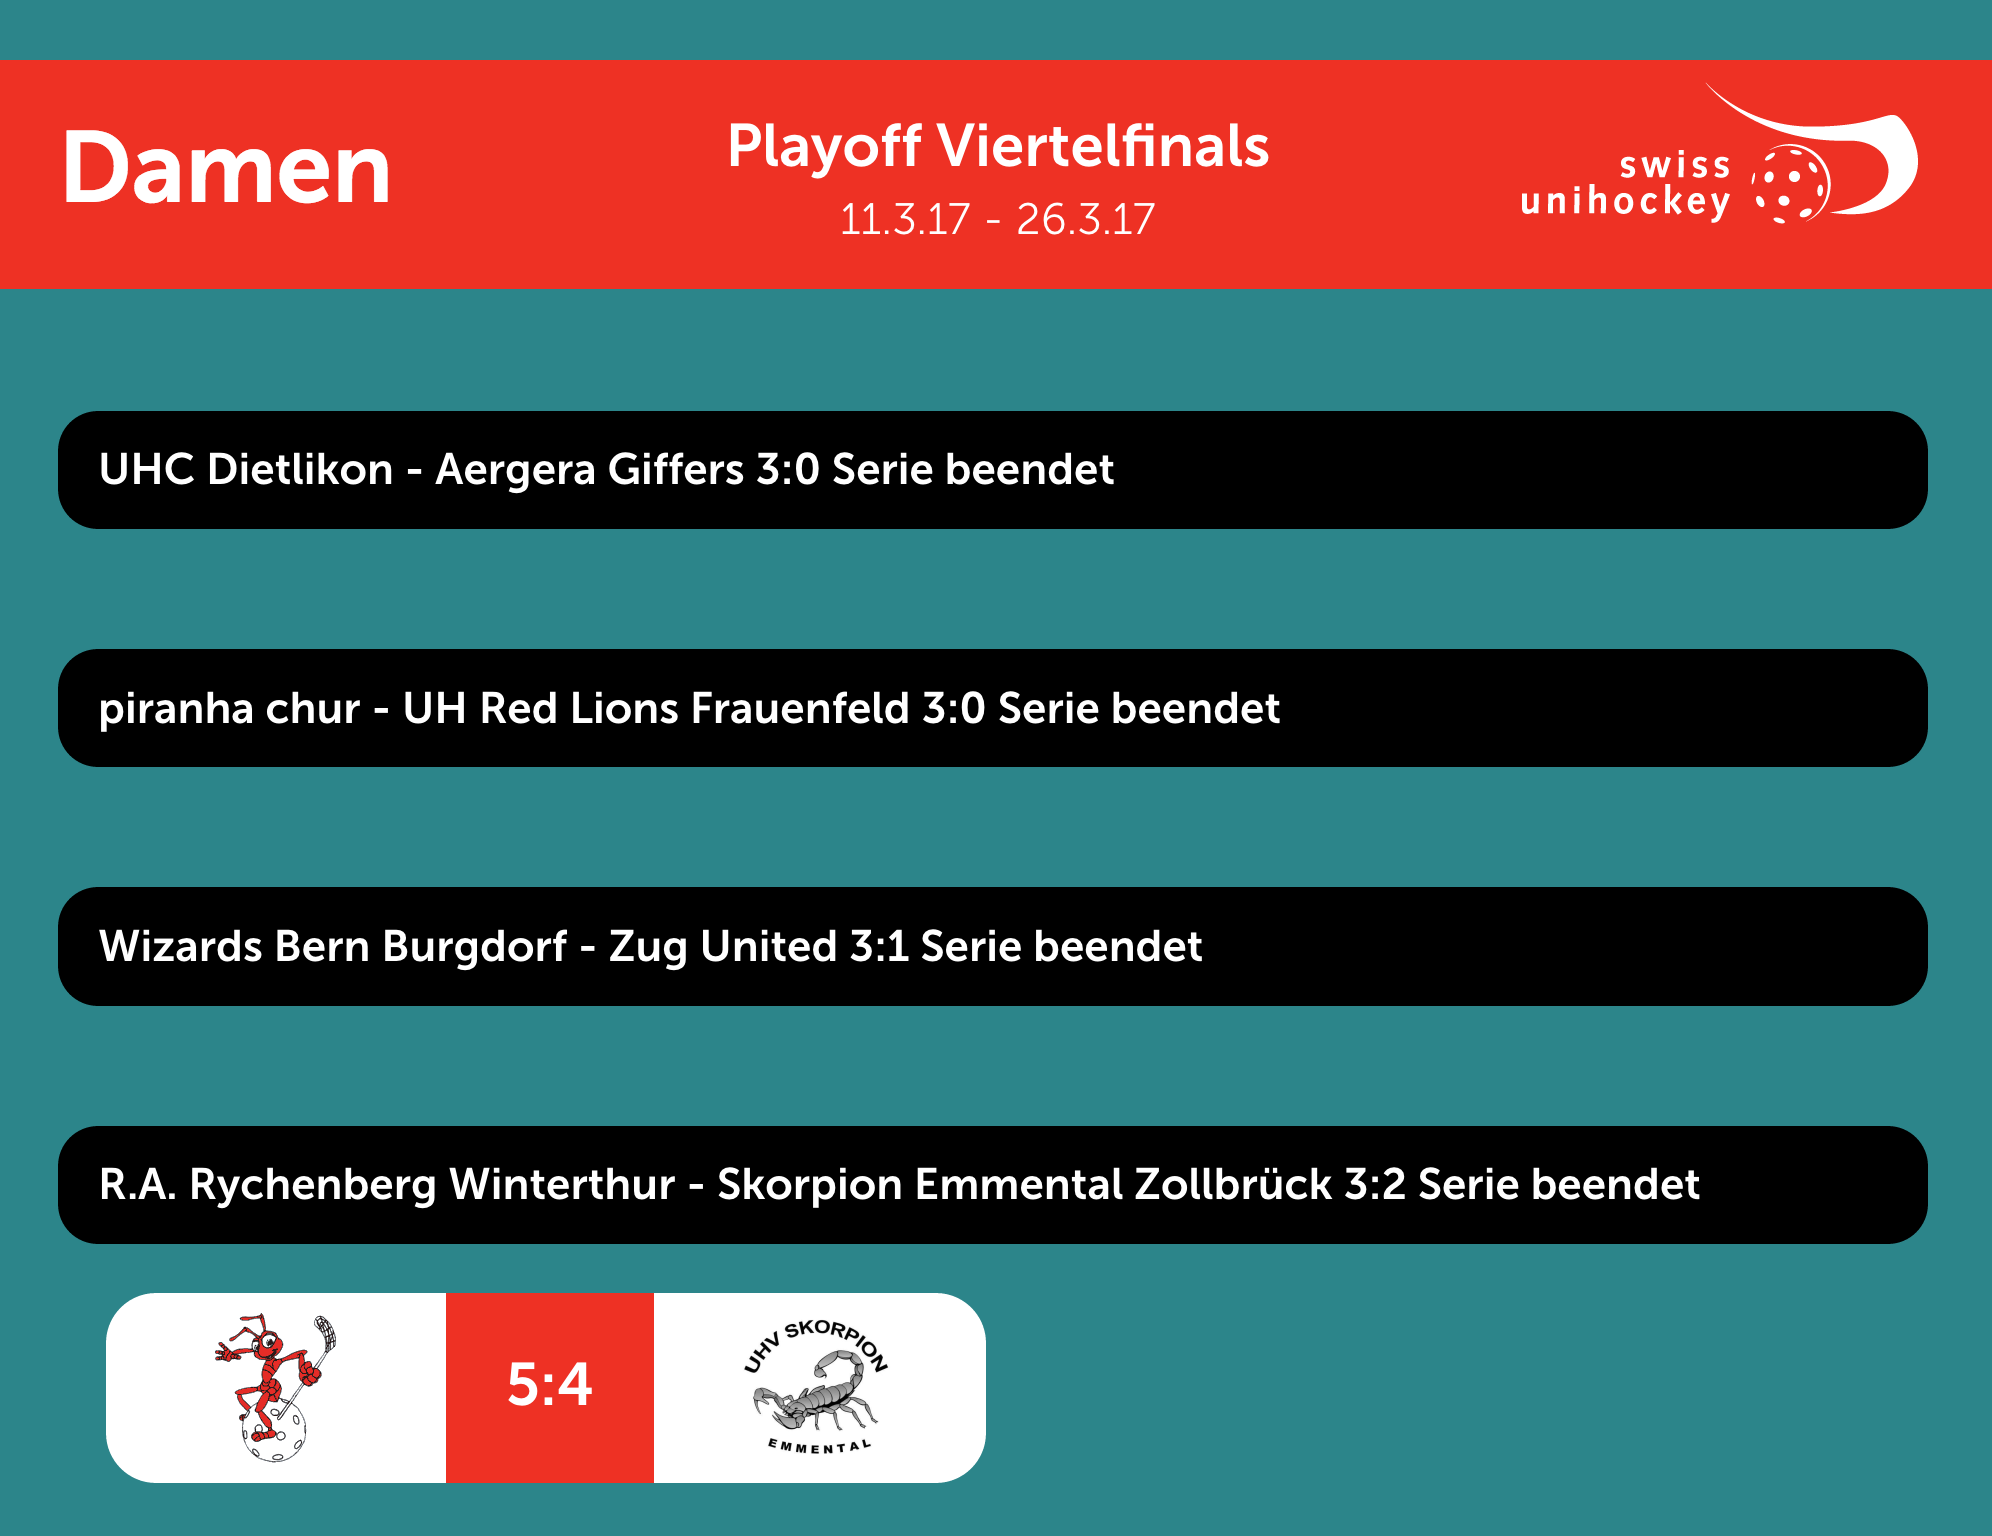 170325_Grafik_NLA_Damen_Playoff_Viertelfinal_Runde5.png